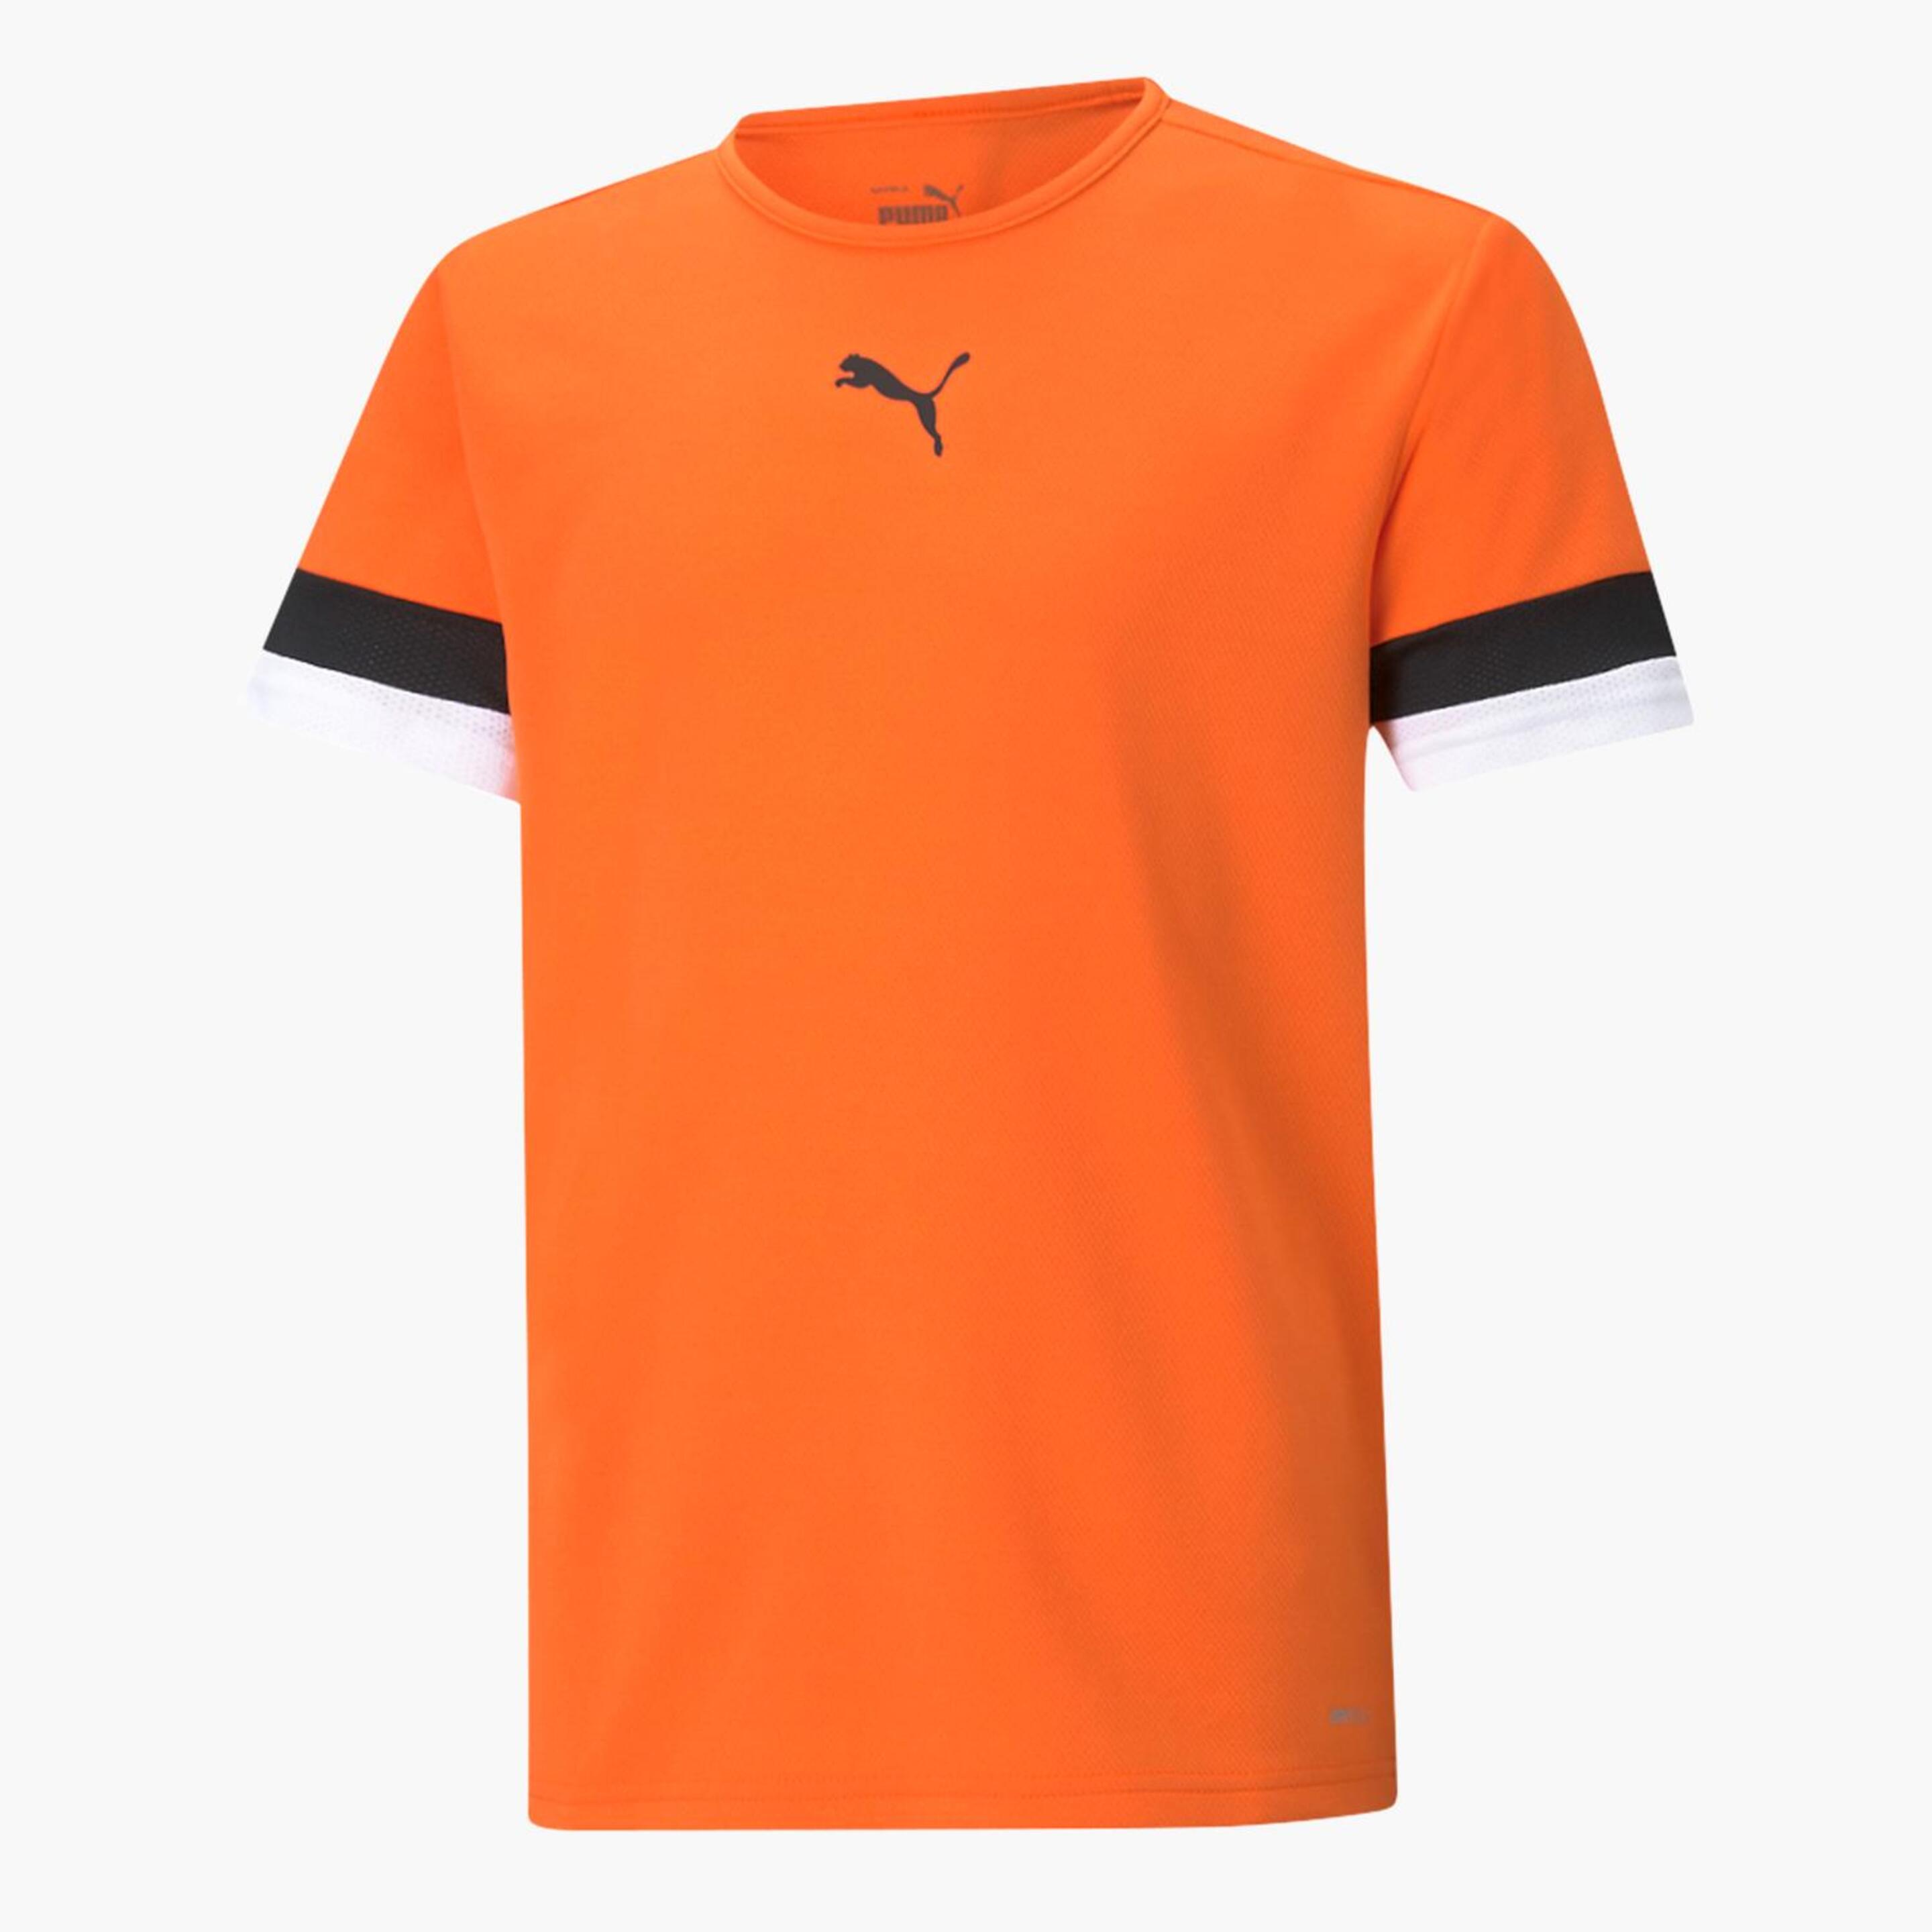 Puma Team Rise - Naranja - Camiseta Fútbol Chico